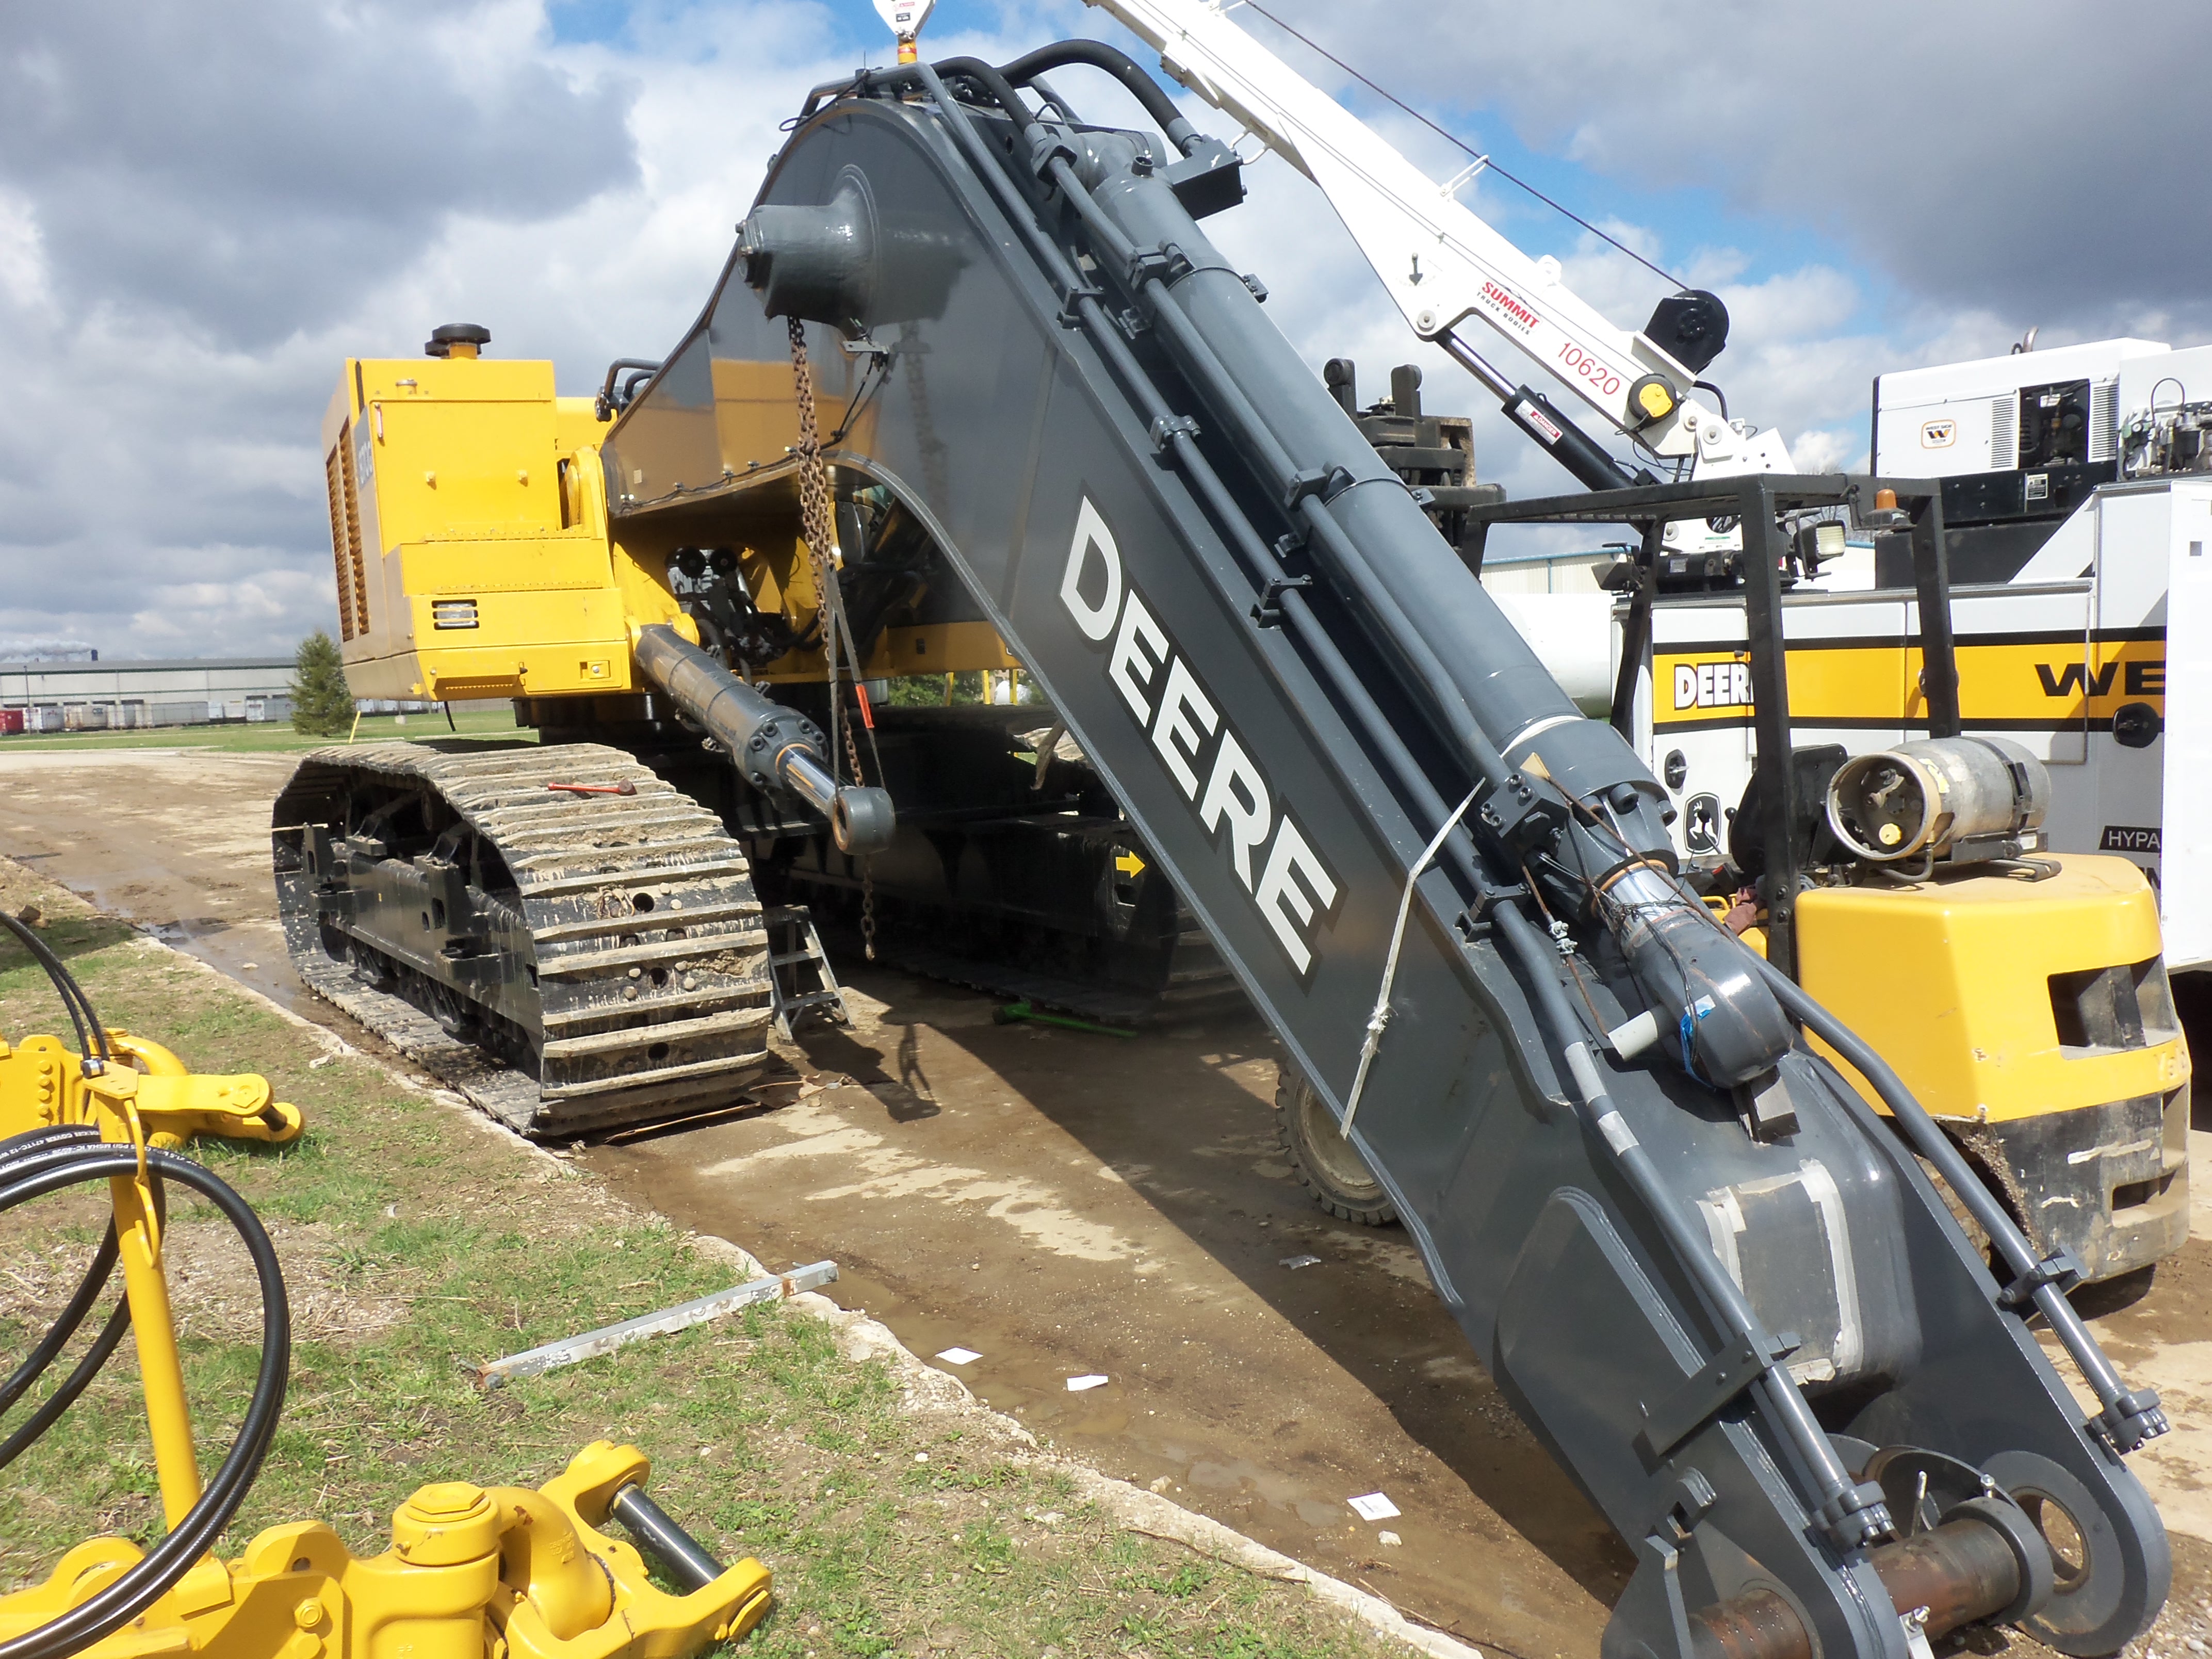 532hp John Deere 870G LC excavator | Tractors | Pinterest | John Deere